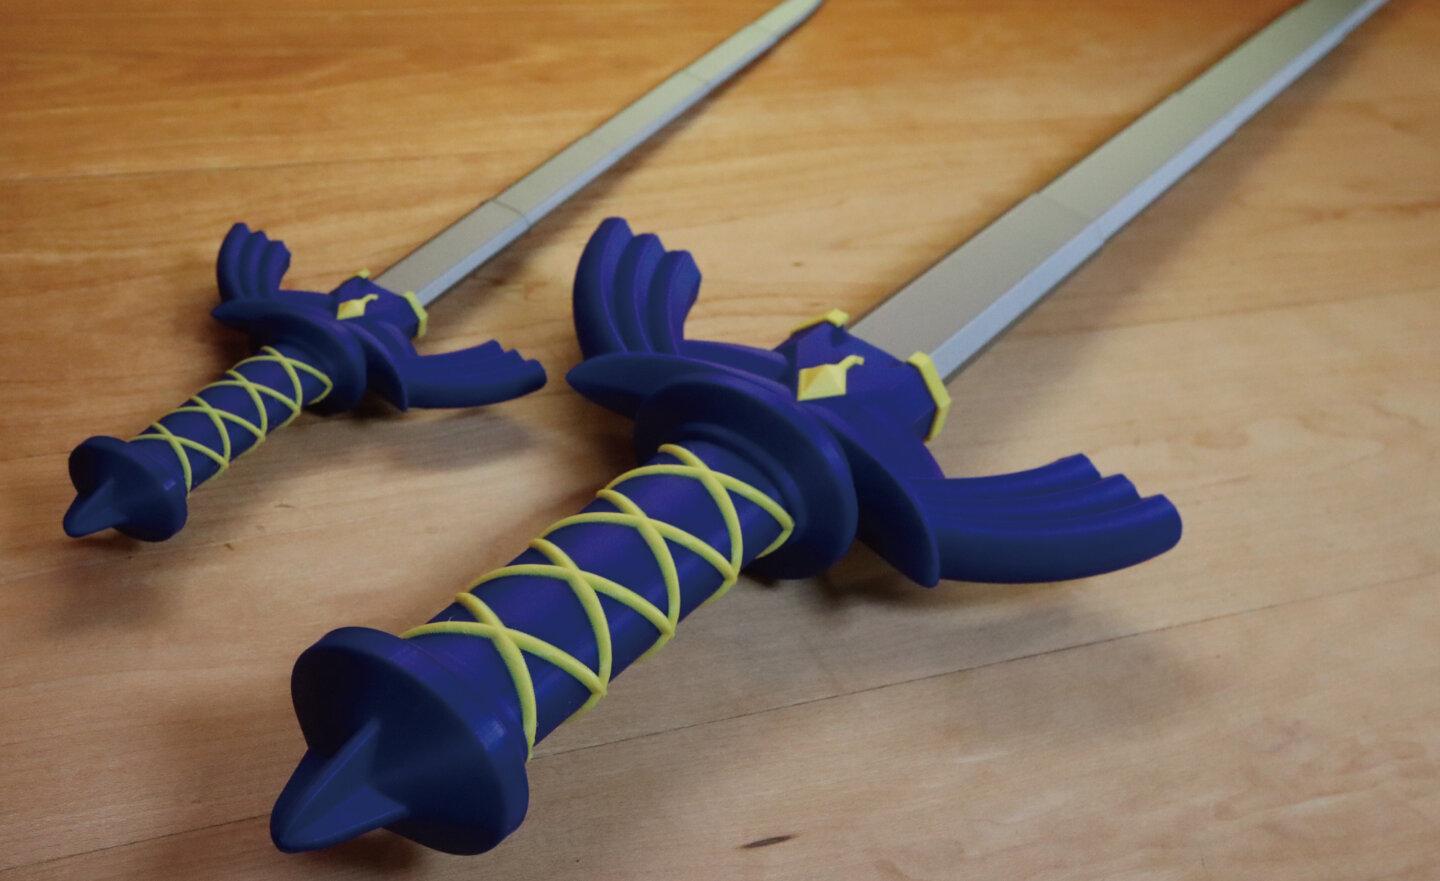 【免費】網友以 3D 列印設計 《薩爾達傳說 王國之淚》Master swold 大師之劍